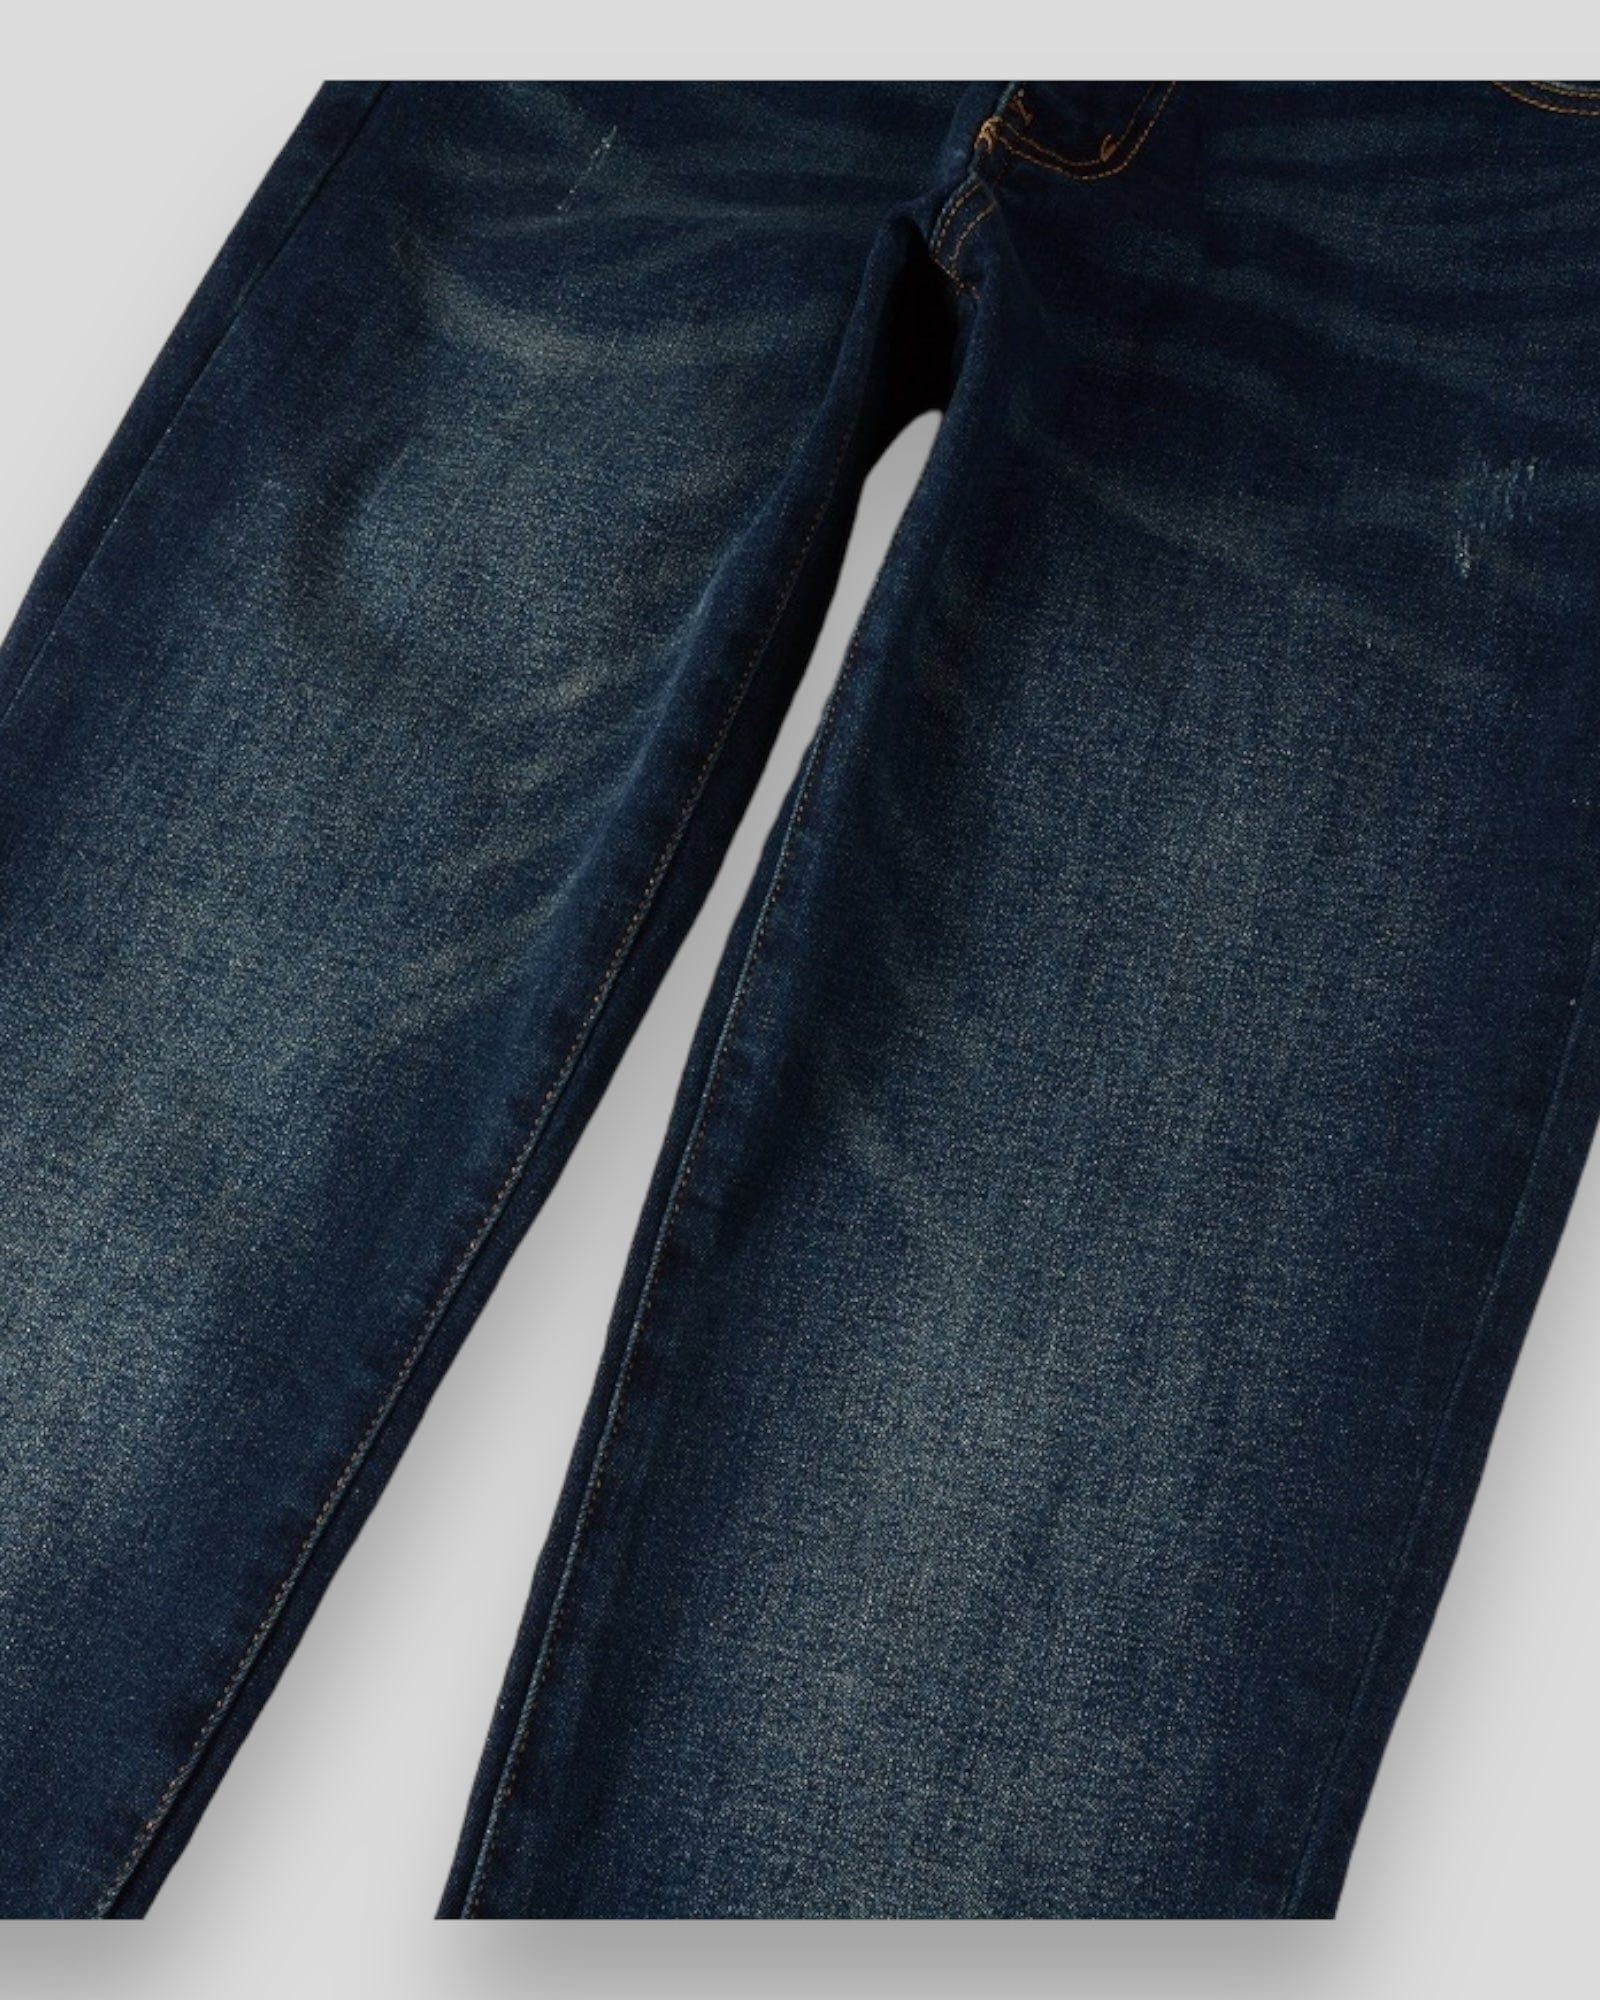 Urbandel pants Urbandel Dark Indigo Blue Skinny Jeans